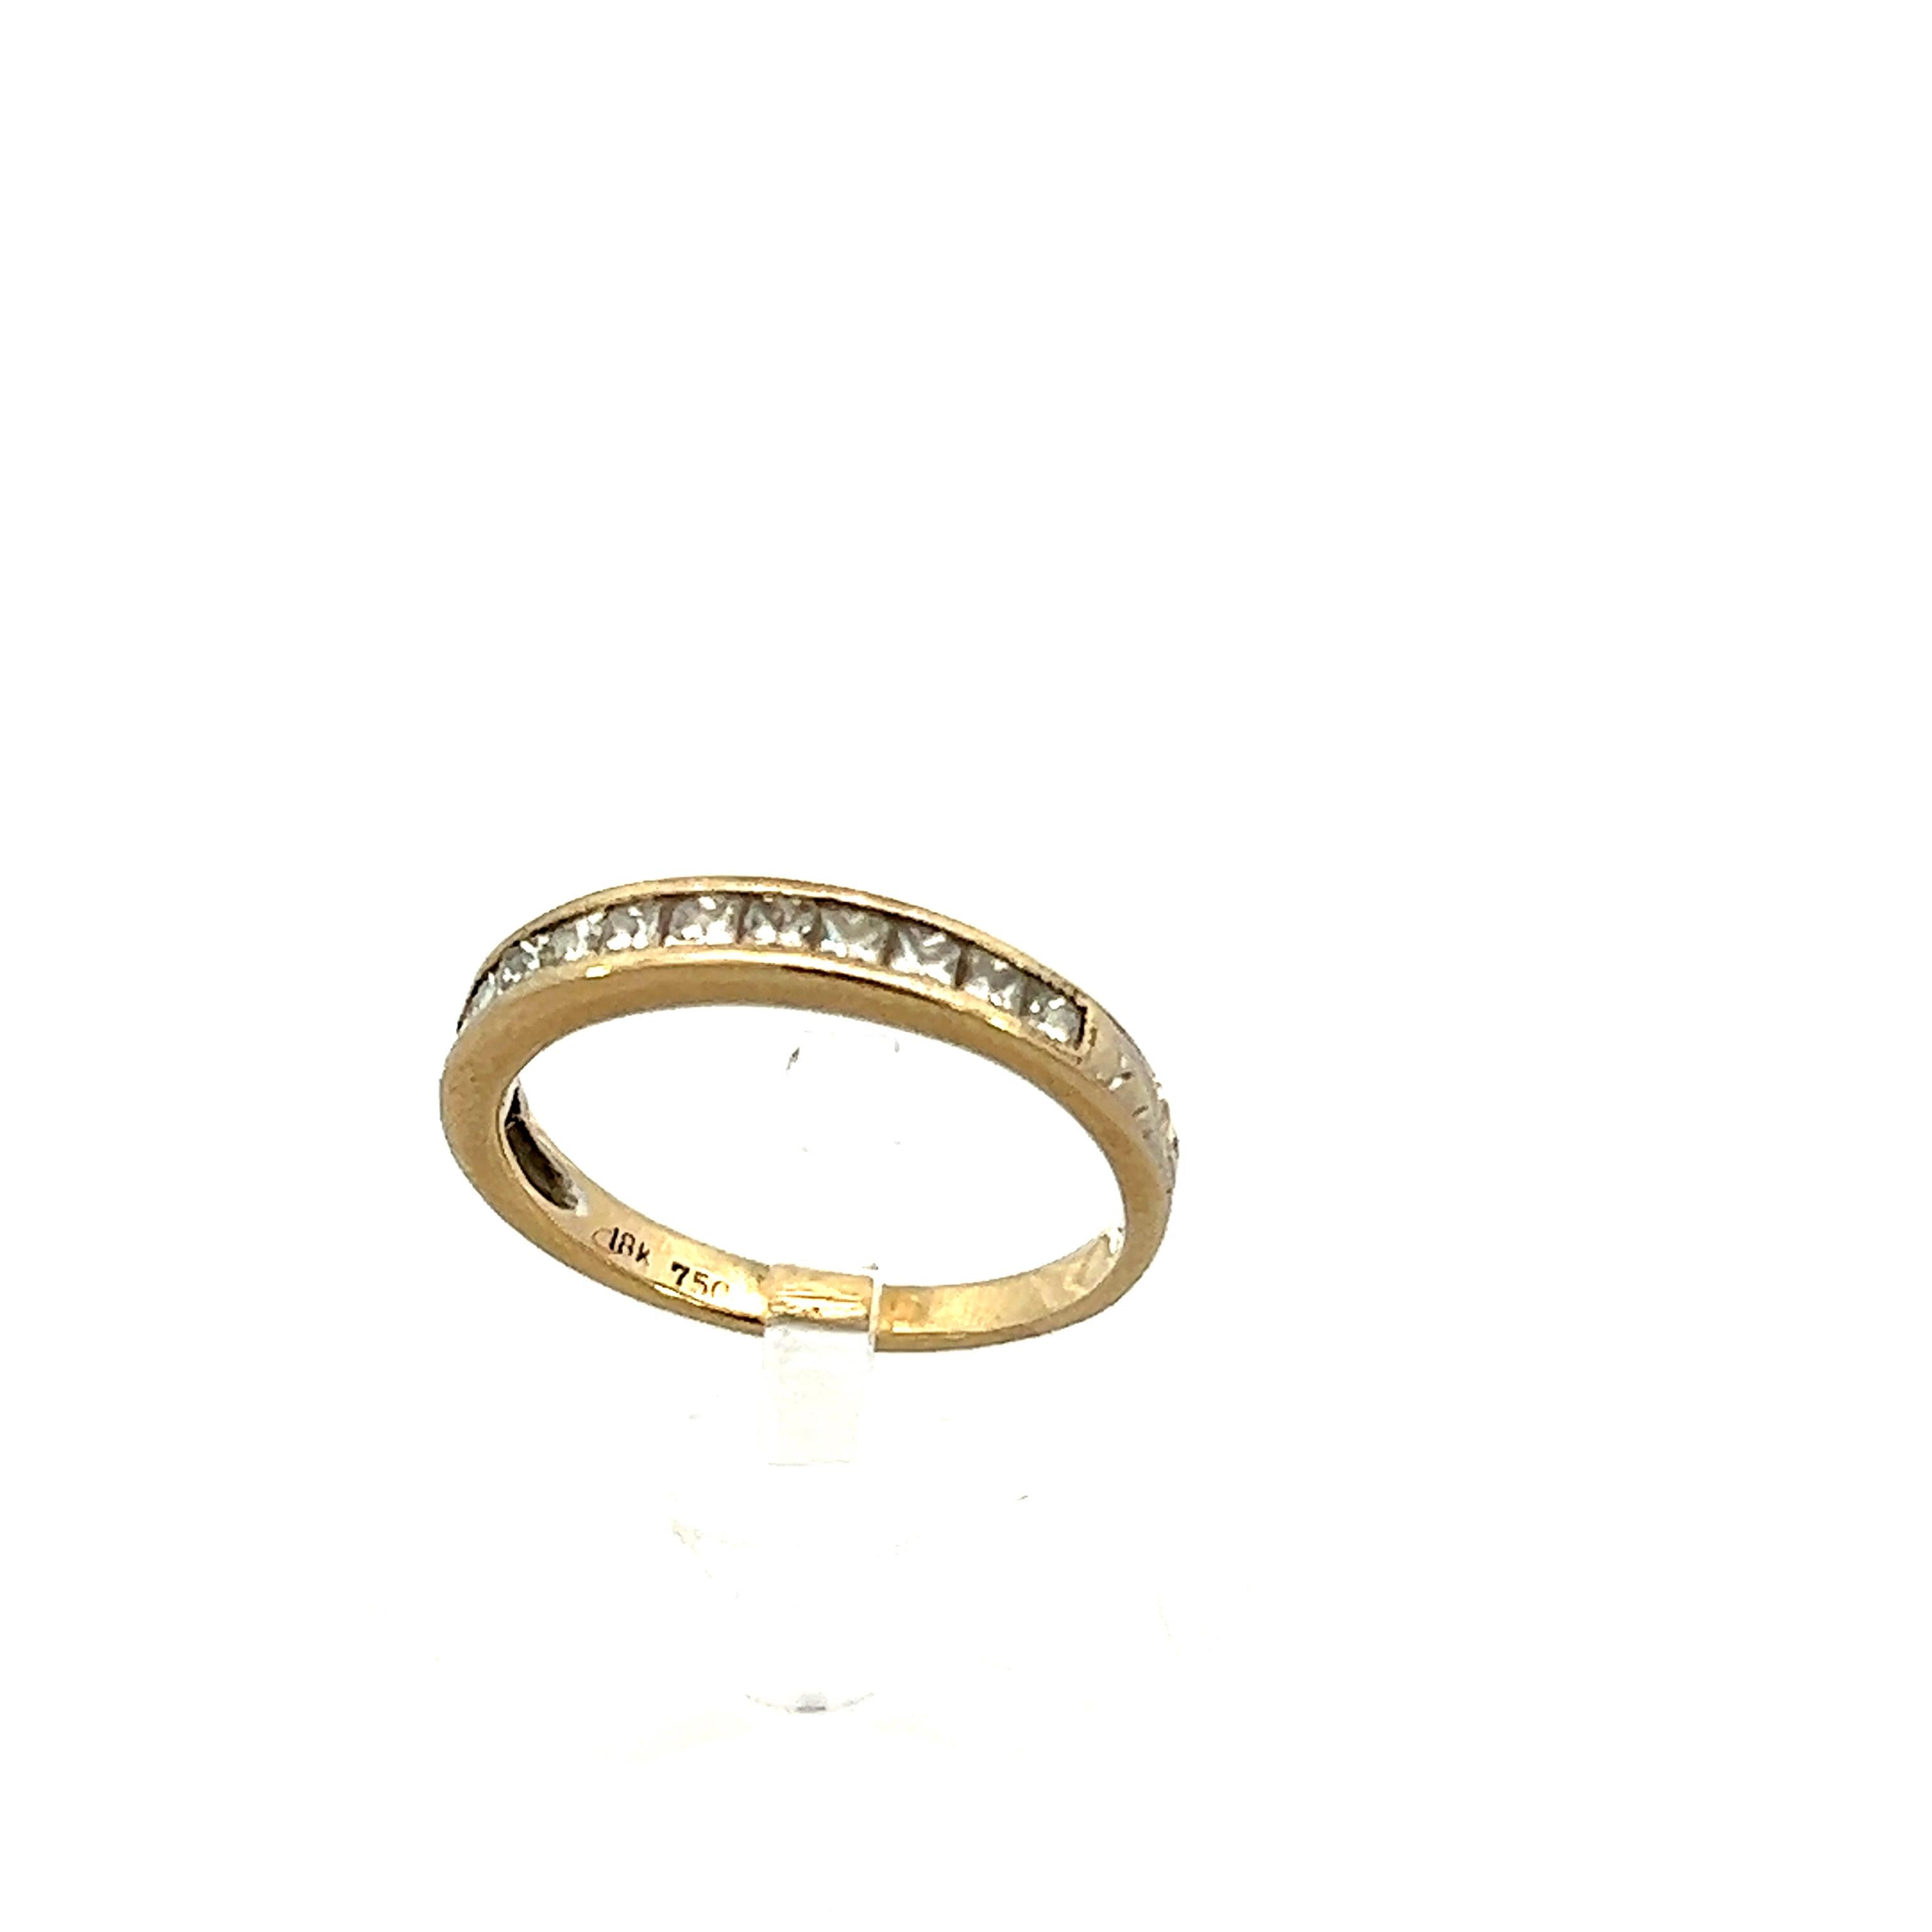 Dieser zeitgenössische Ring besteht aus 18 Karat Weißgold mit handgravierten Diamanten im Prinzessinnenschliff. Weißgold ist eine zeitlose, ästhetische Kombination mit Diamanten und ist haltbarer und kratzfester als Gelbgold und Sterlingsilber. Der